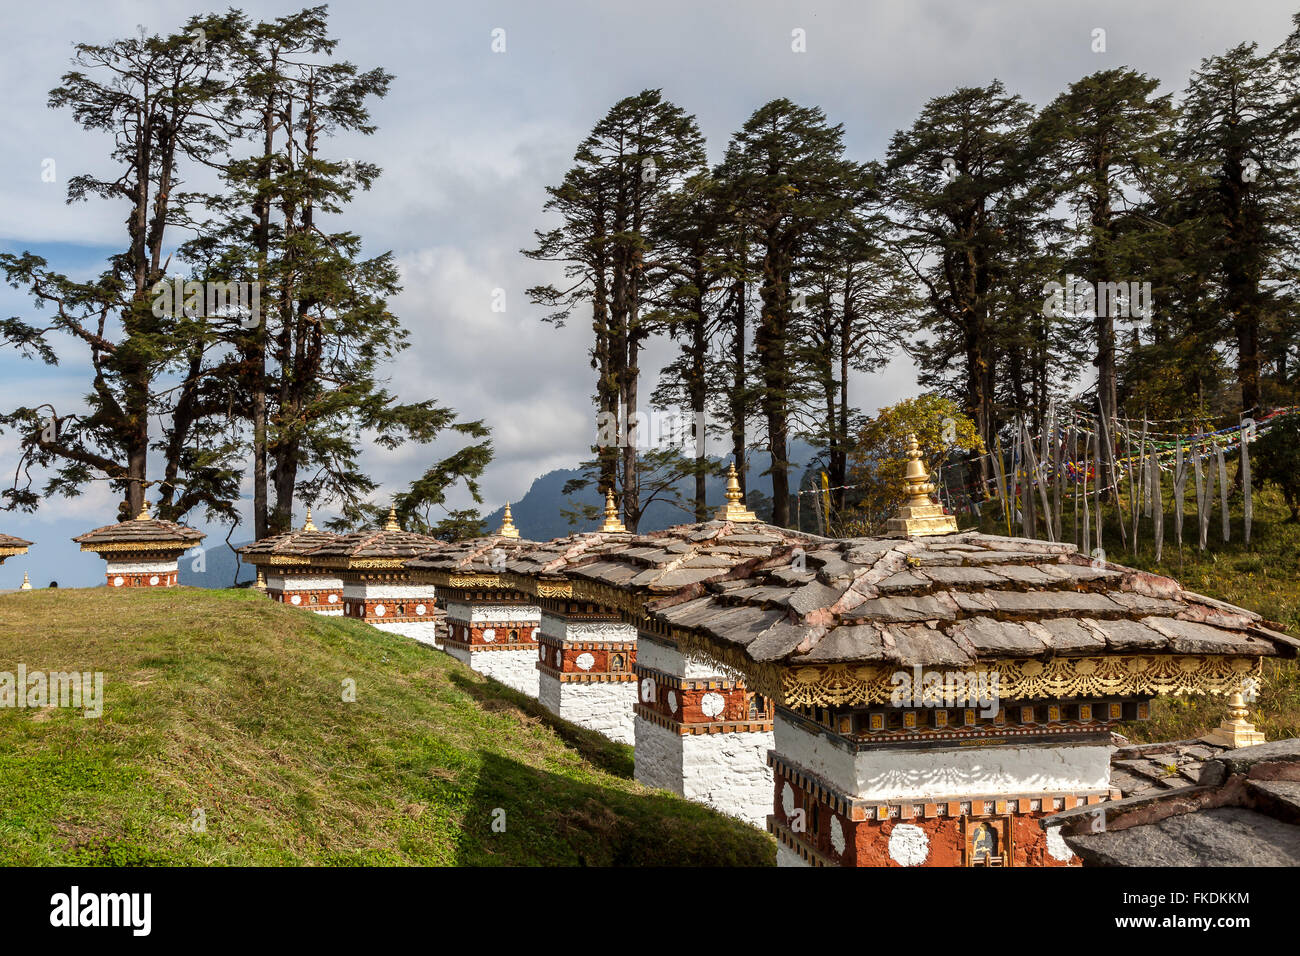 108 stupas (chortens) at Dochu La pass. Bhutan. Stock Photo